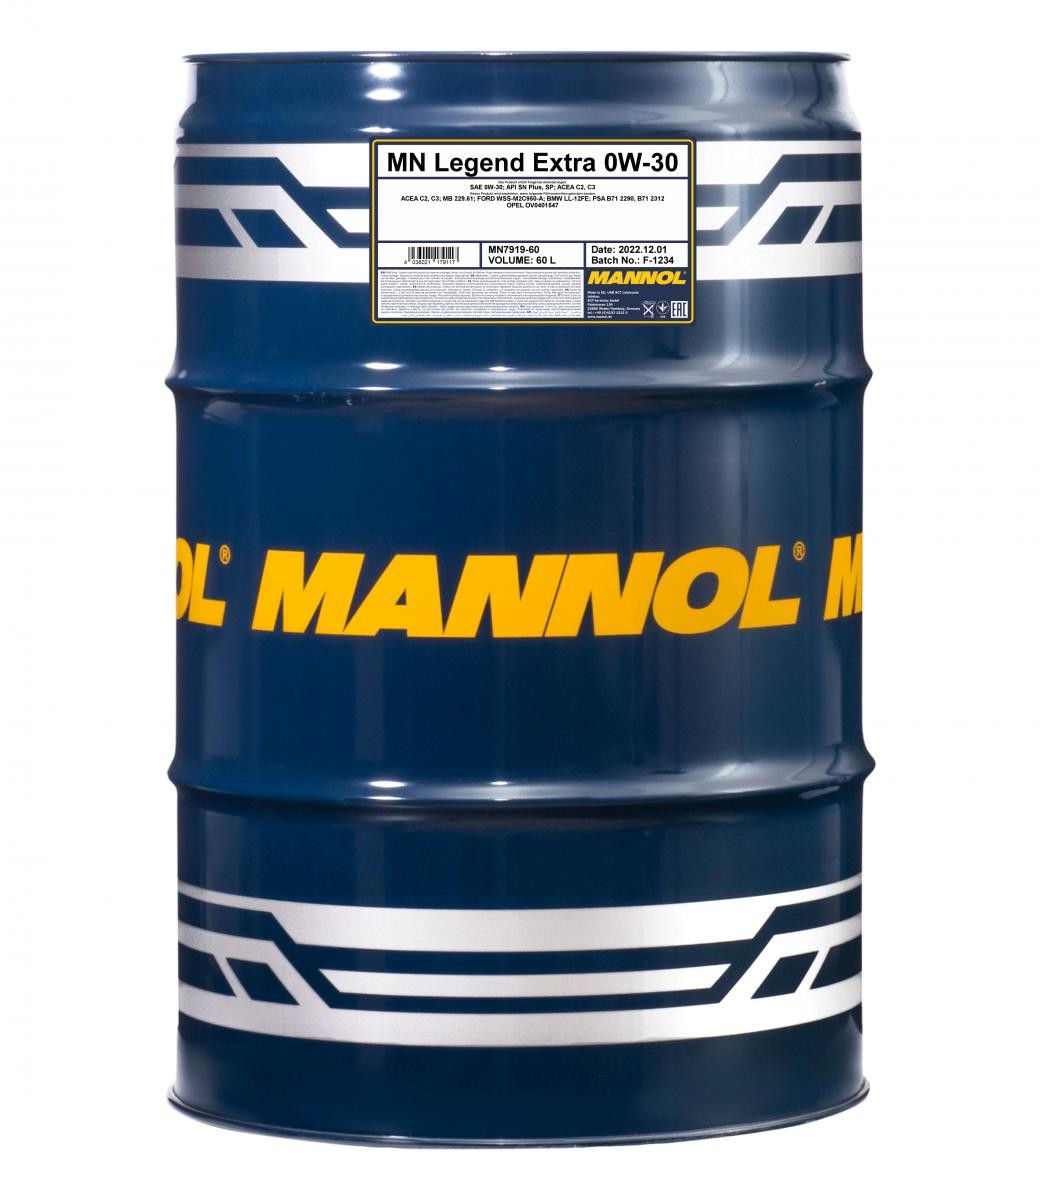 MN7919-60 MANNOL LEGEND, EXTRA 0W-30, 60l Motoröl MN7919-60 günstig kaufen